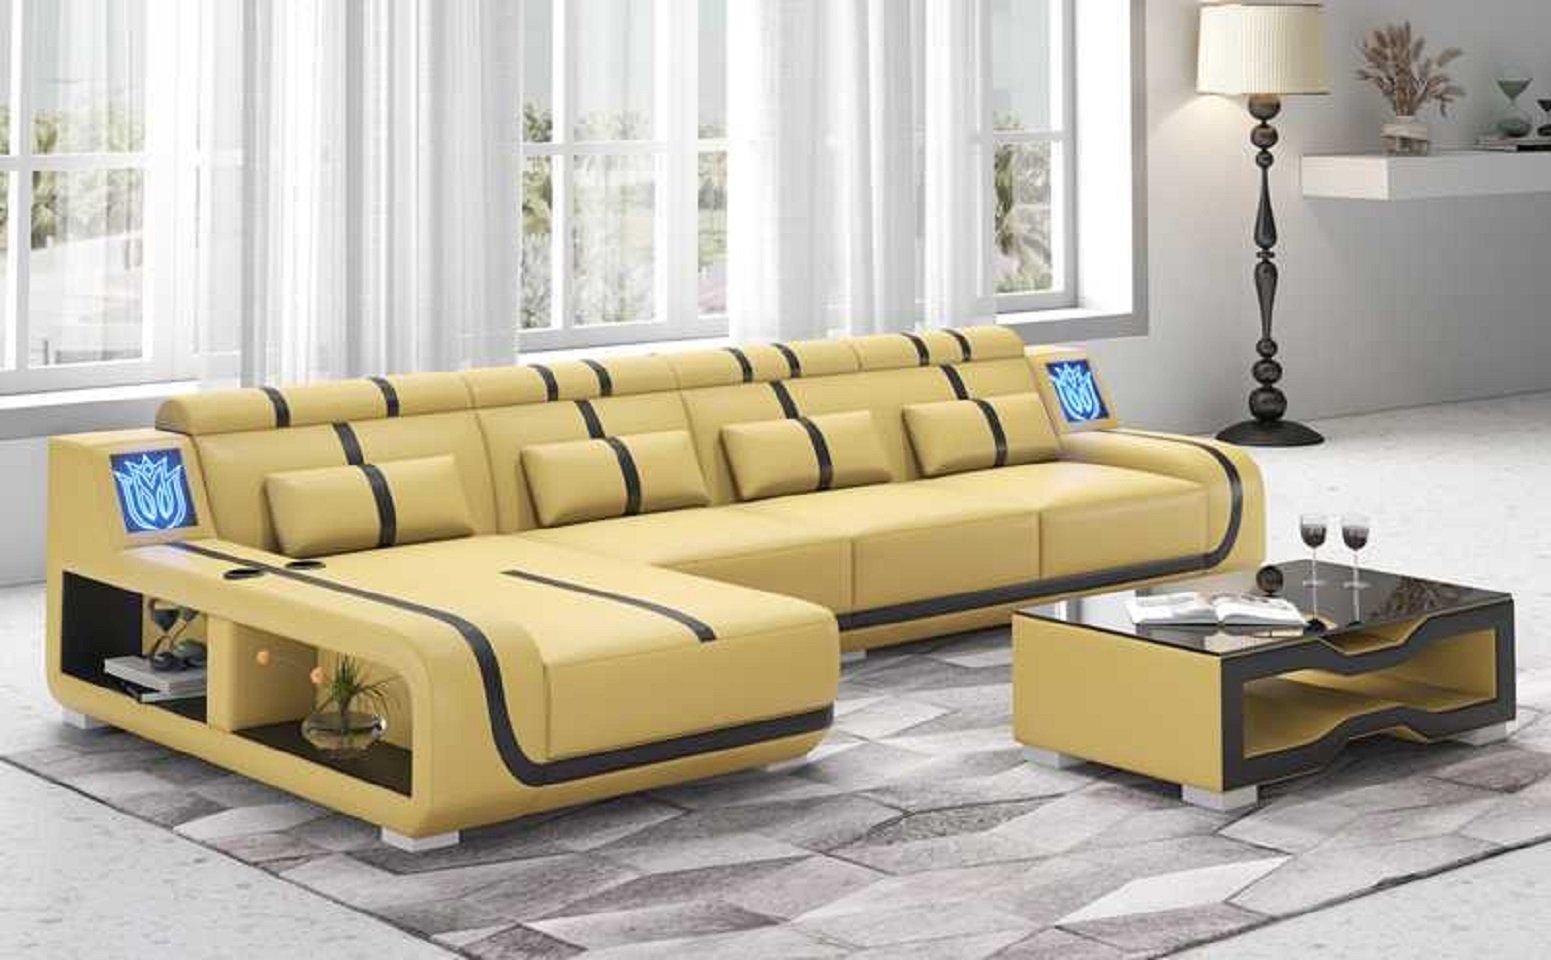 JVmoebel Teile, Design Europe Couch Modern 3 Form Ecksofa Ecksofa couchen, L Made in Sofa Liege Beige